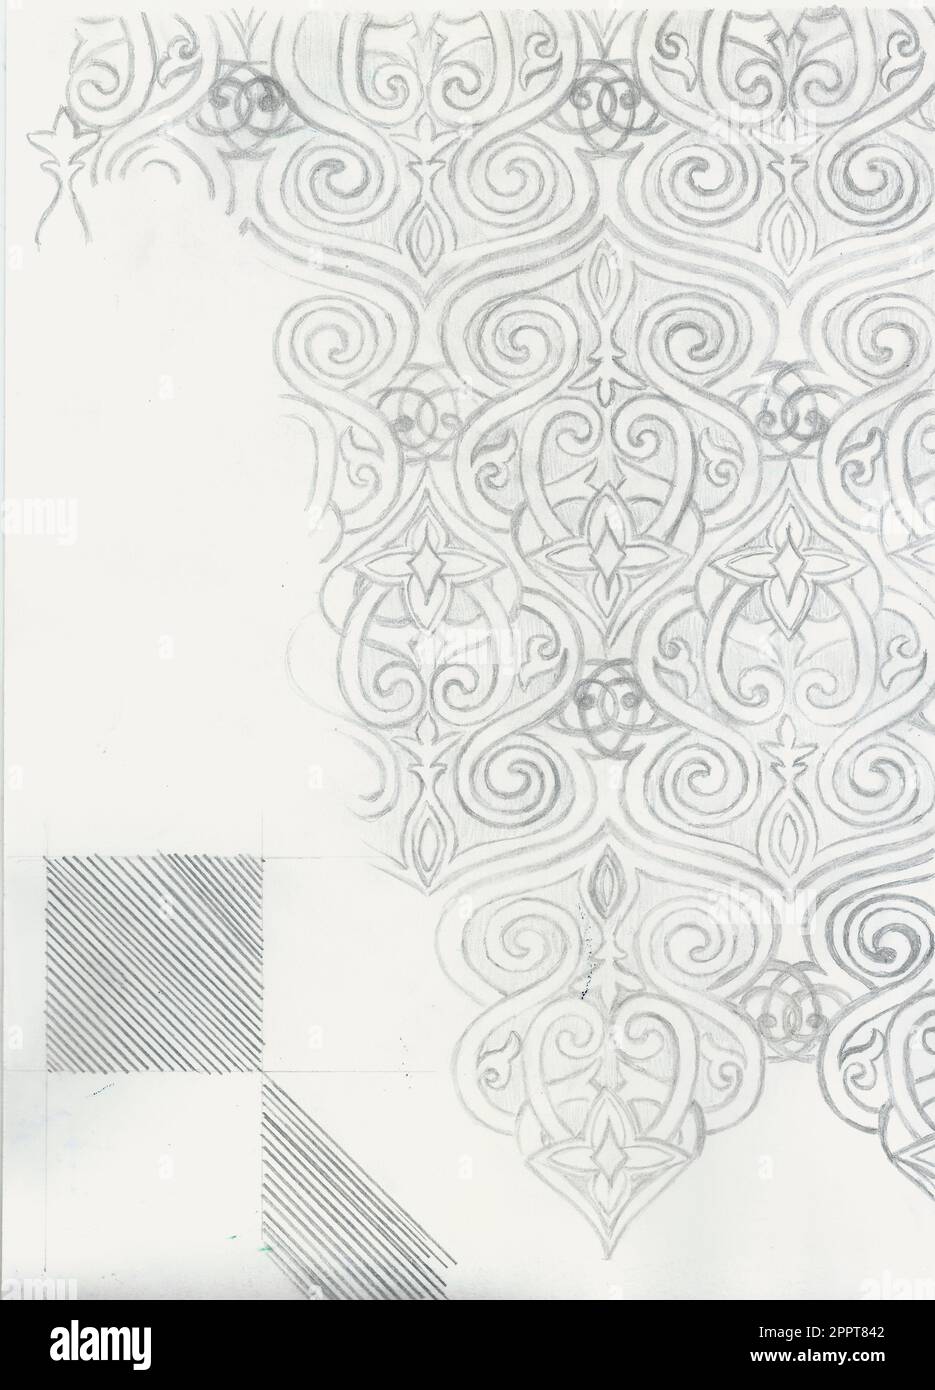 carta da parati disegnata a mano su carta acquerello con matita grigia, motivi con volute che si collegano tra loro Foto Stock